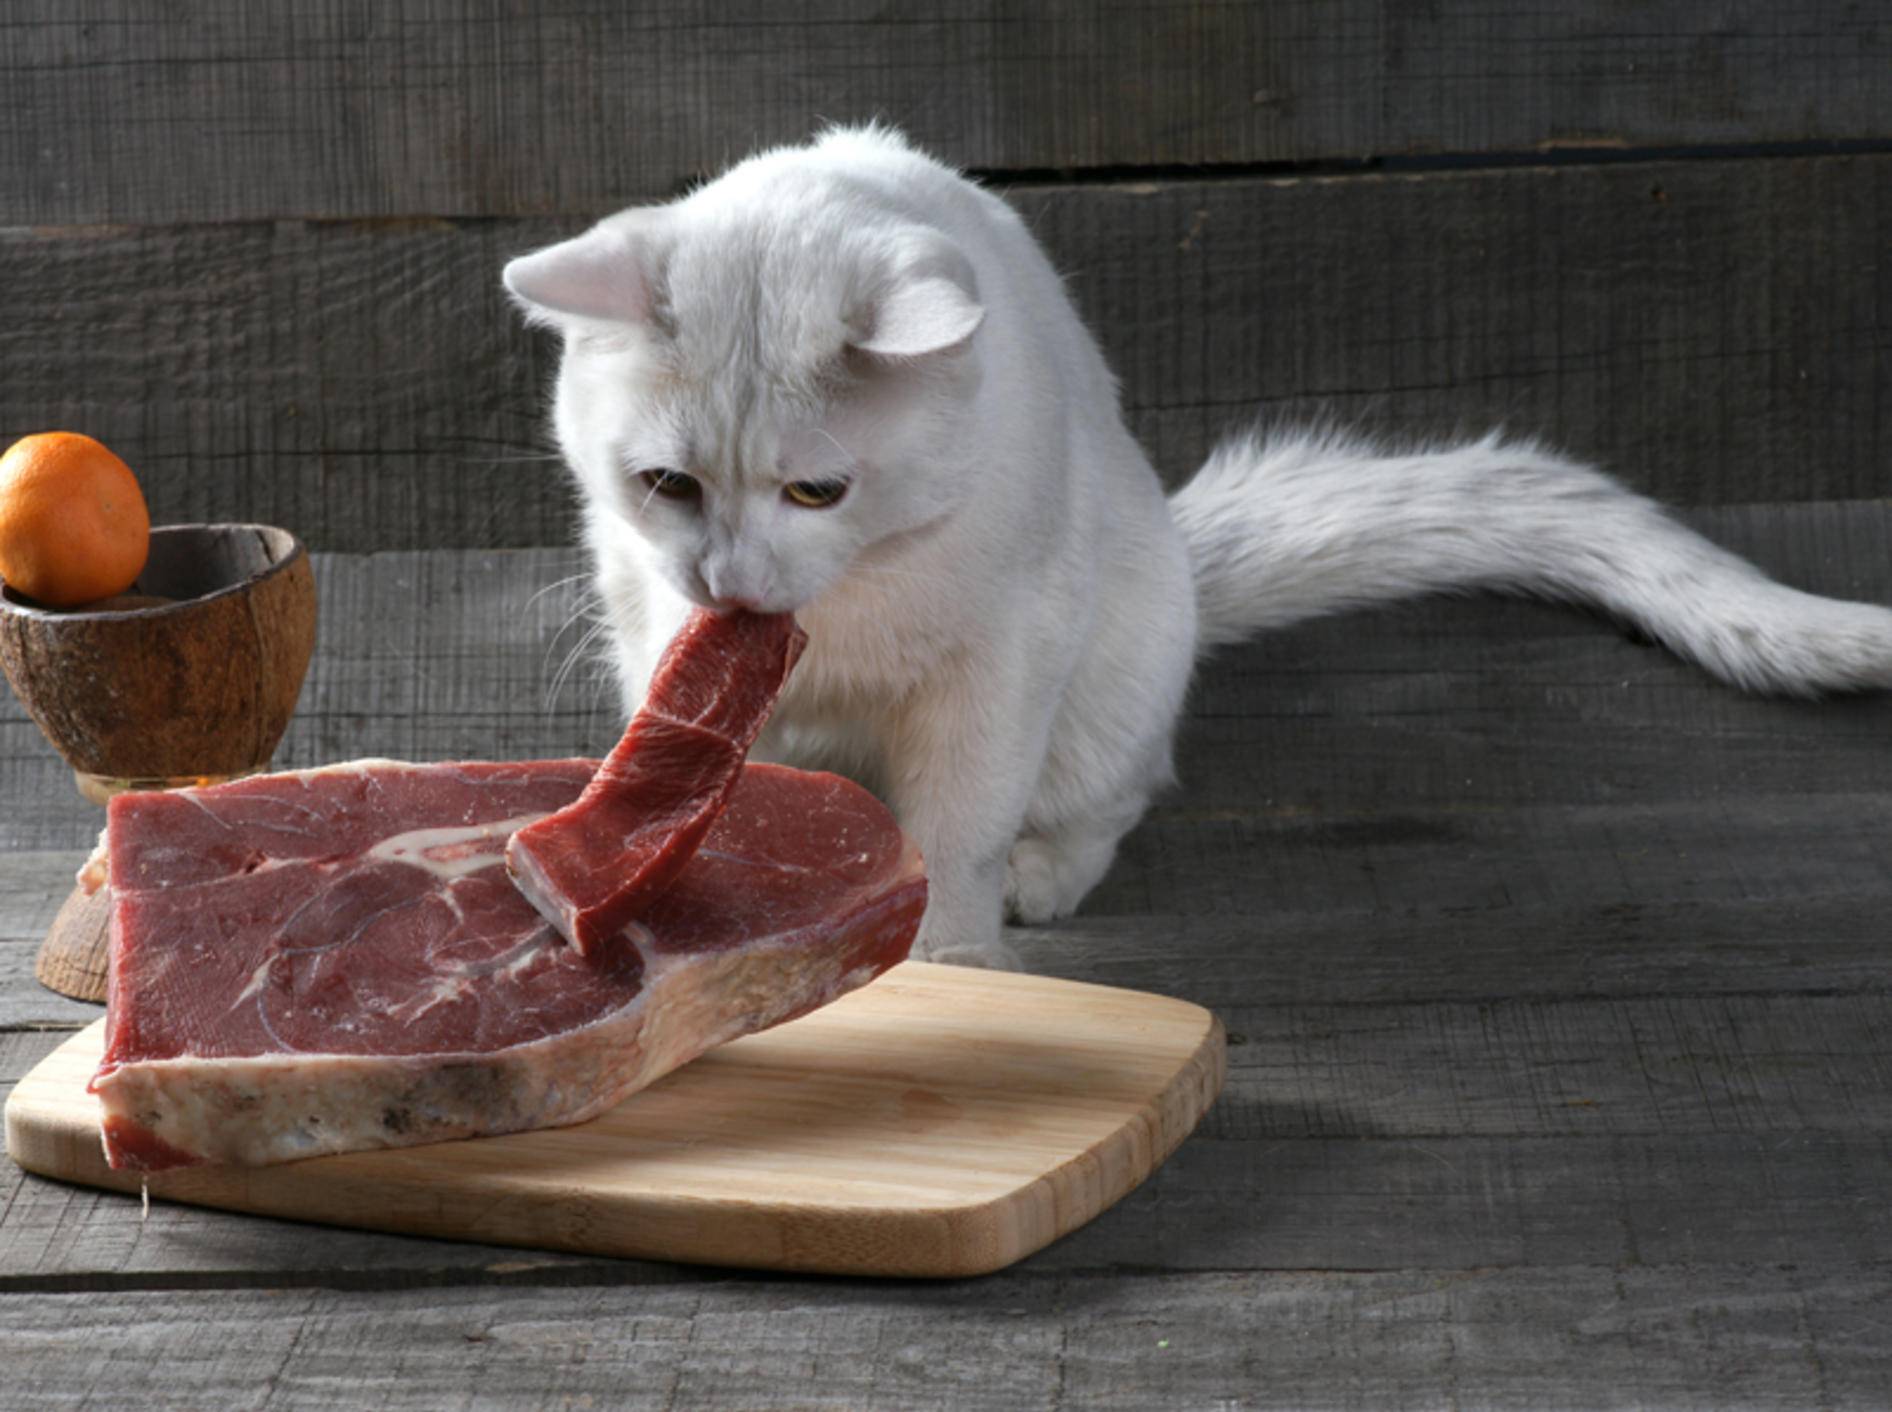 Katze barfen: ja oder nein? Beim Thema Katzenernährung gehen die Meinungen auseinander – Shutterstock / SERGEY DOLGIKH